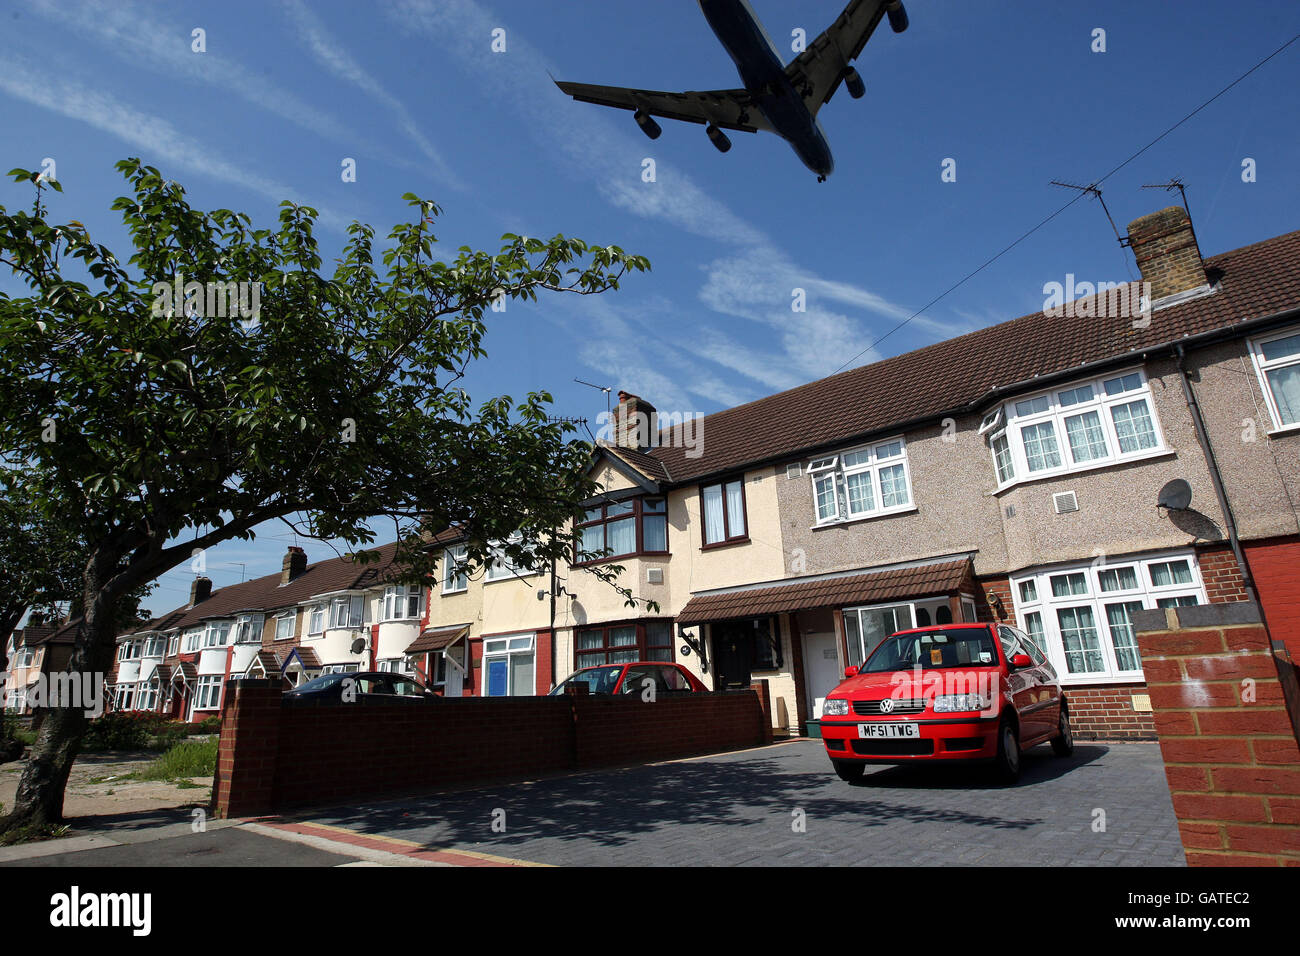 Una fotografia generica di un aereo che vola in basso su una proprietà di alloggi locali, sul suo approccio finale per atterrare a Heathrow Airpor Foto Stock